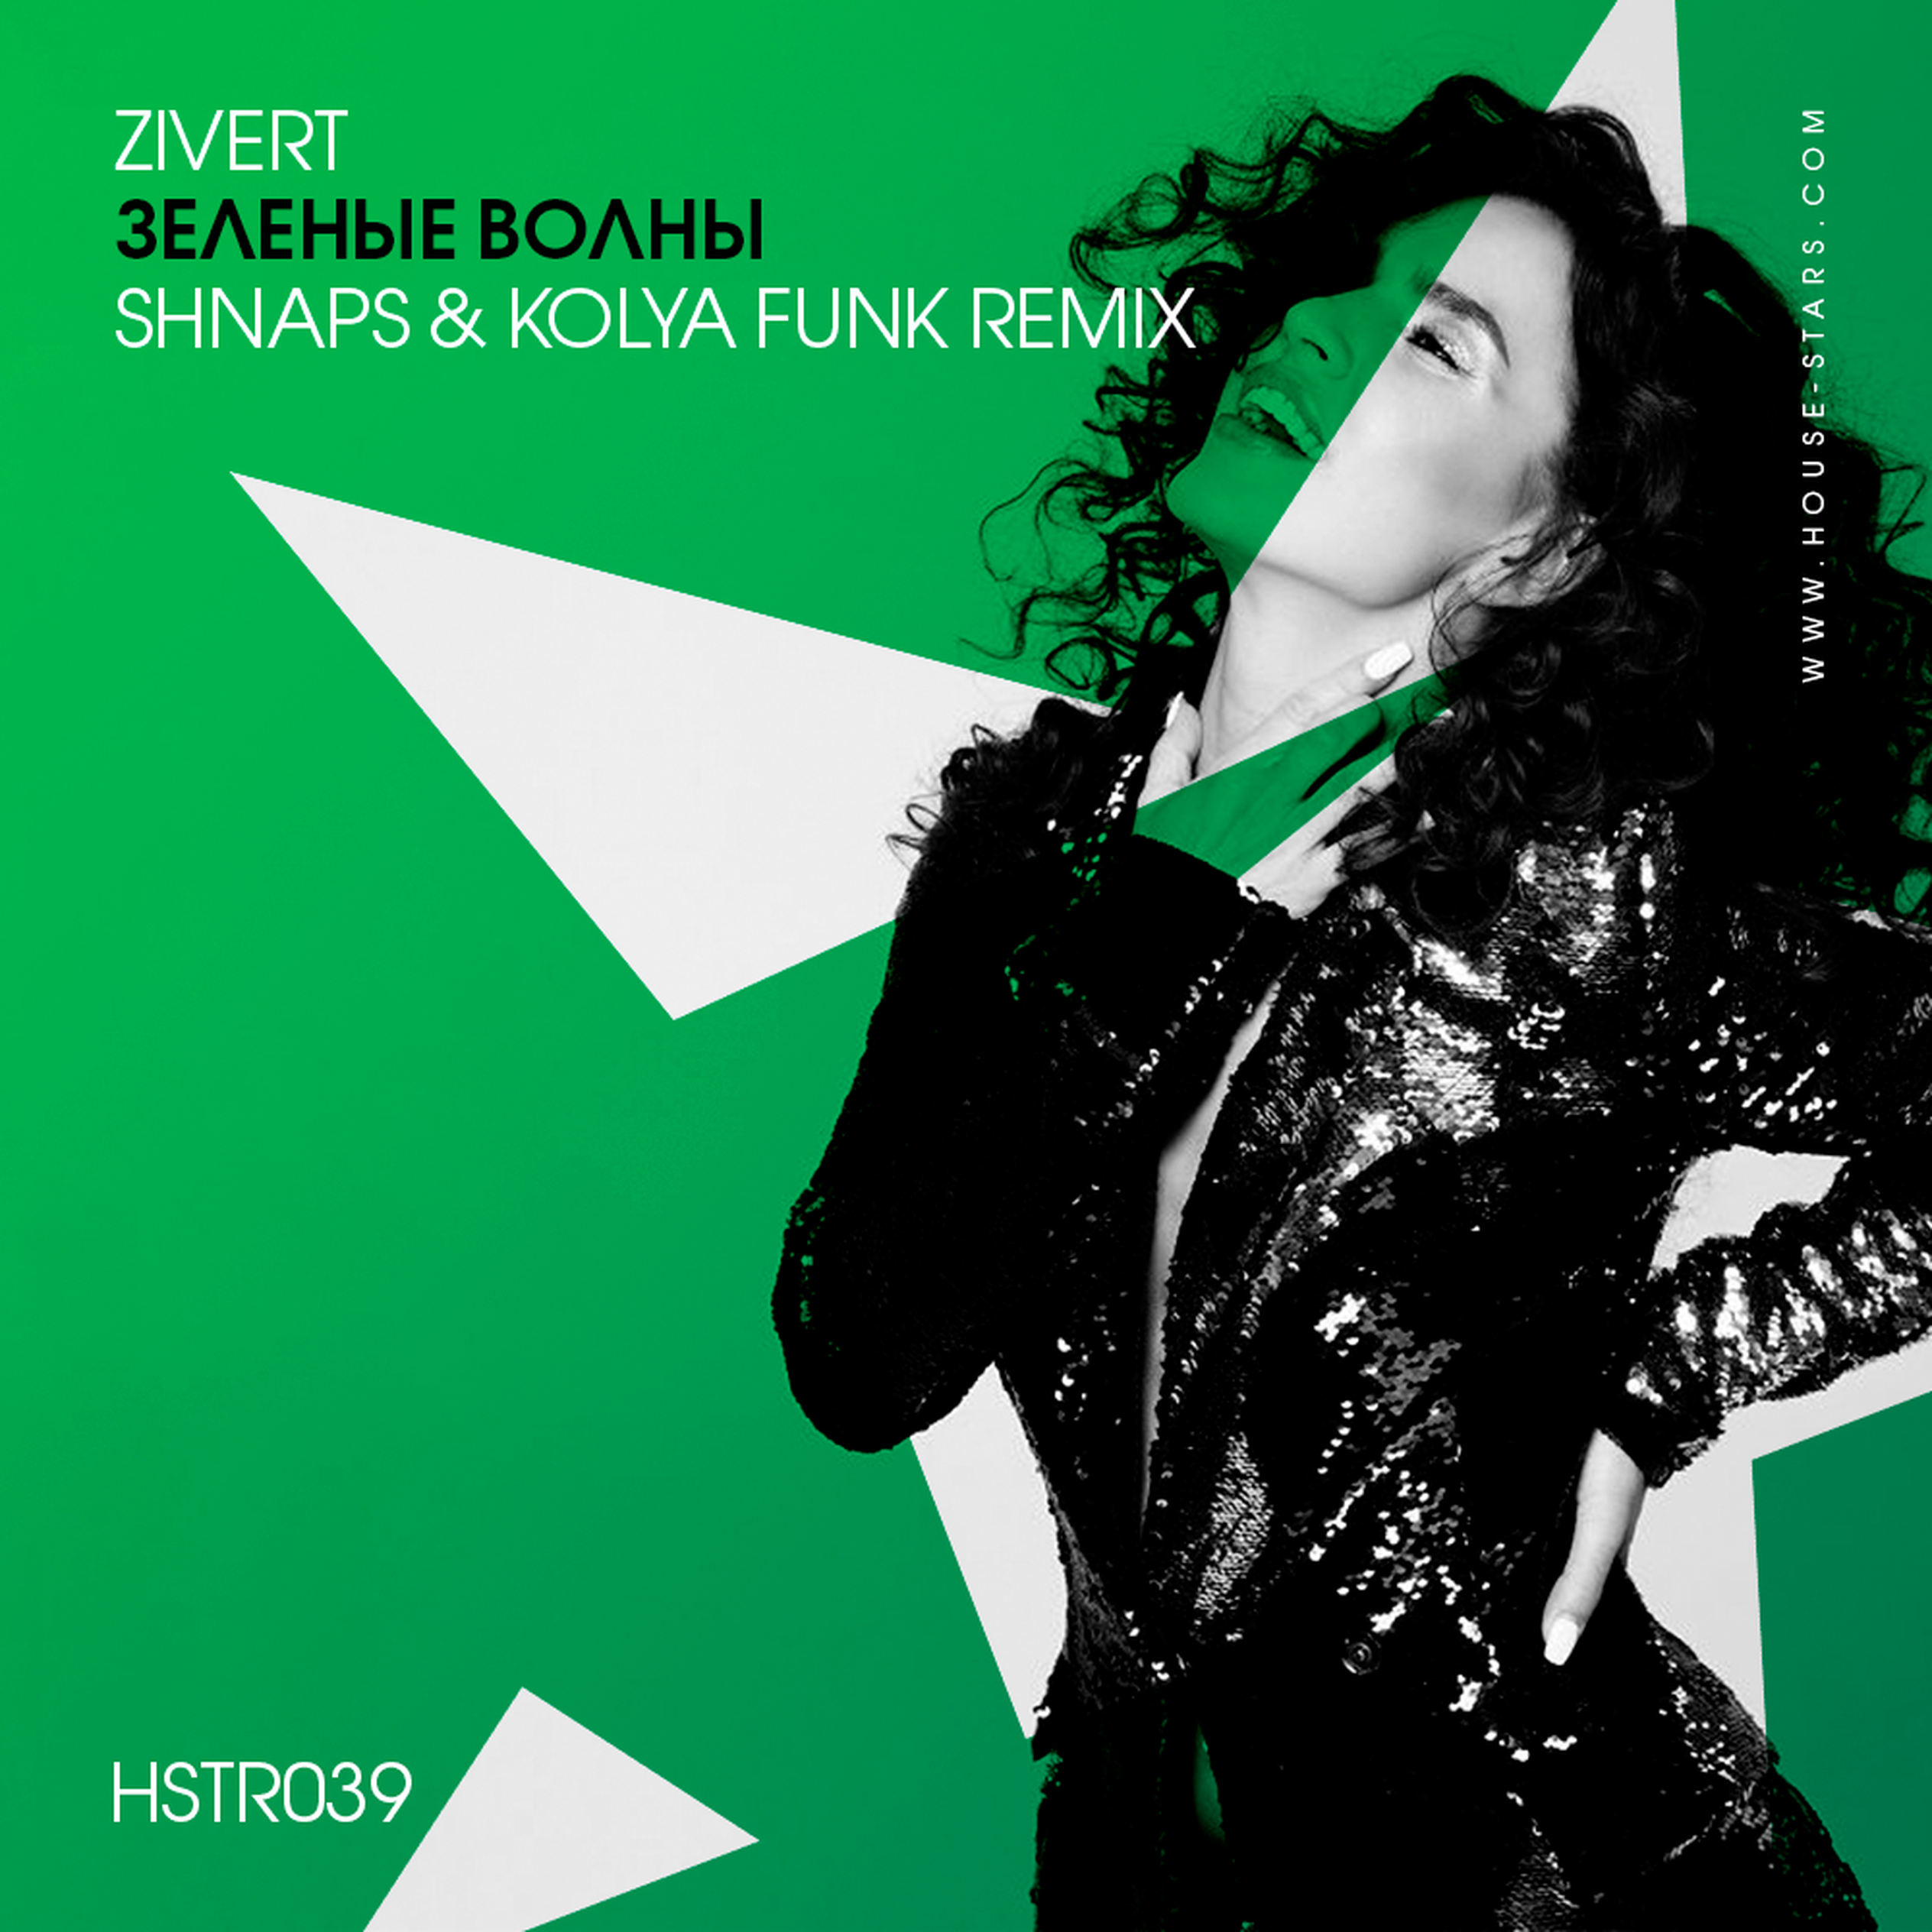 Песню zivert зеленые волны. Зиверт зеленые волны. Зелёные волны (shnaps & Kolya Funk Remix). Зиверт в зеленом. Zivert зелёные волны обложка.